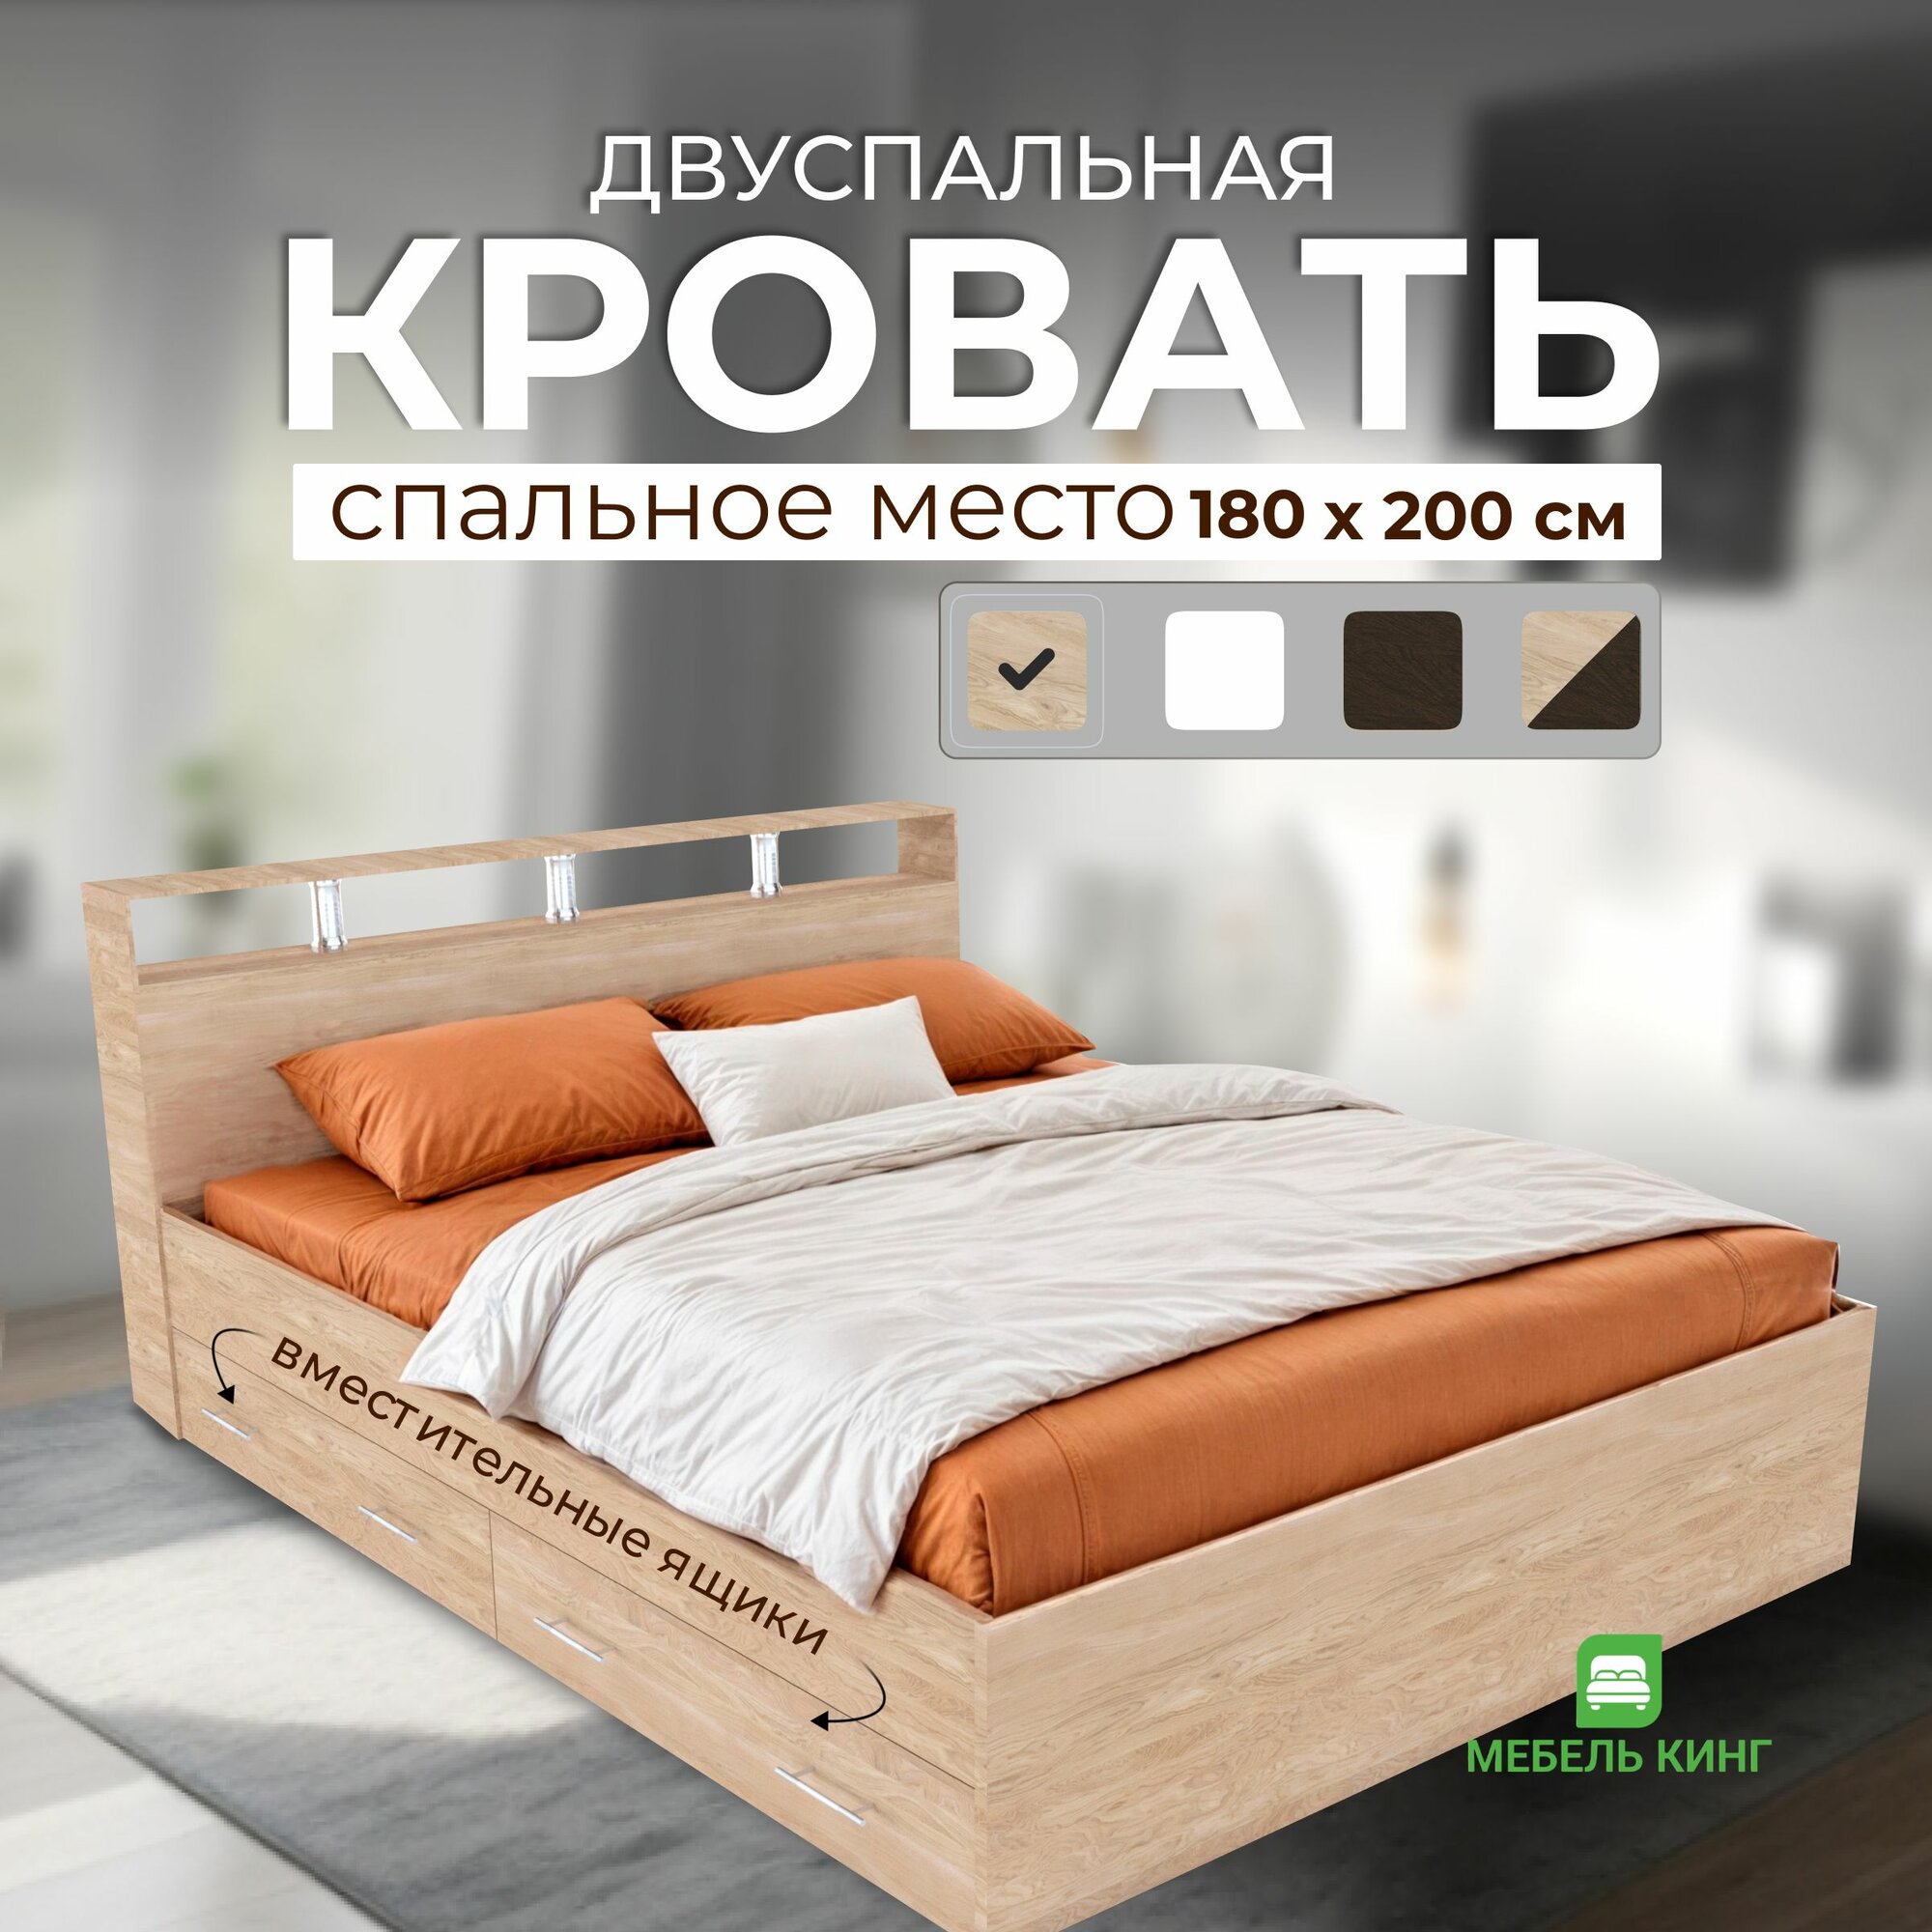 Двуспальная кровать Саломея с ящиками 180х200, дуб сонома, Мебель Кинг